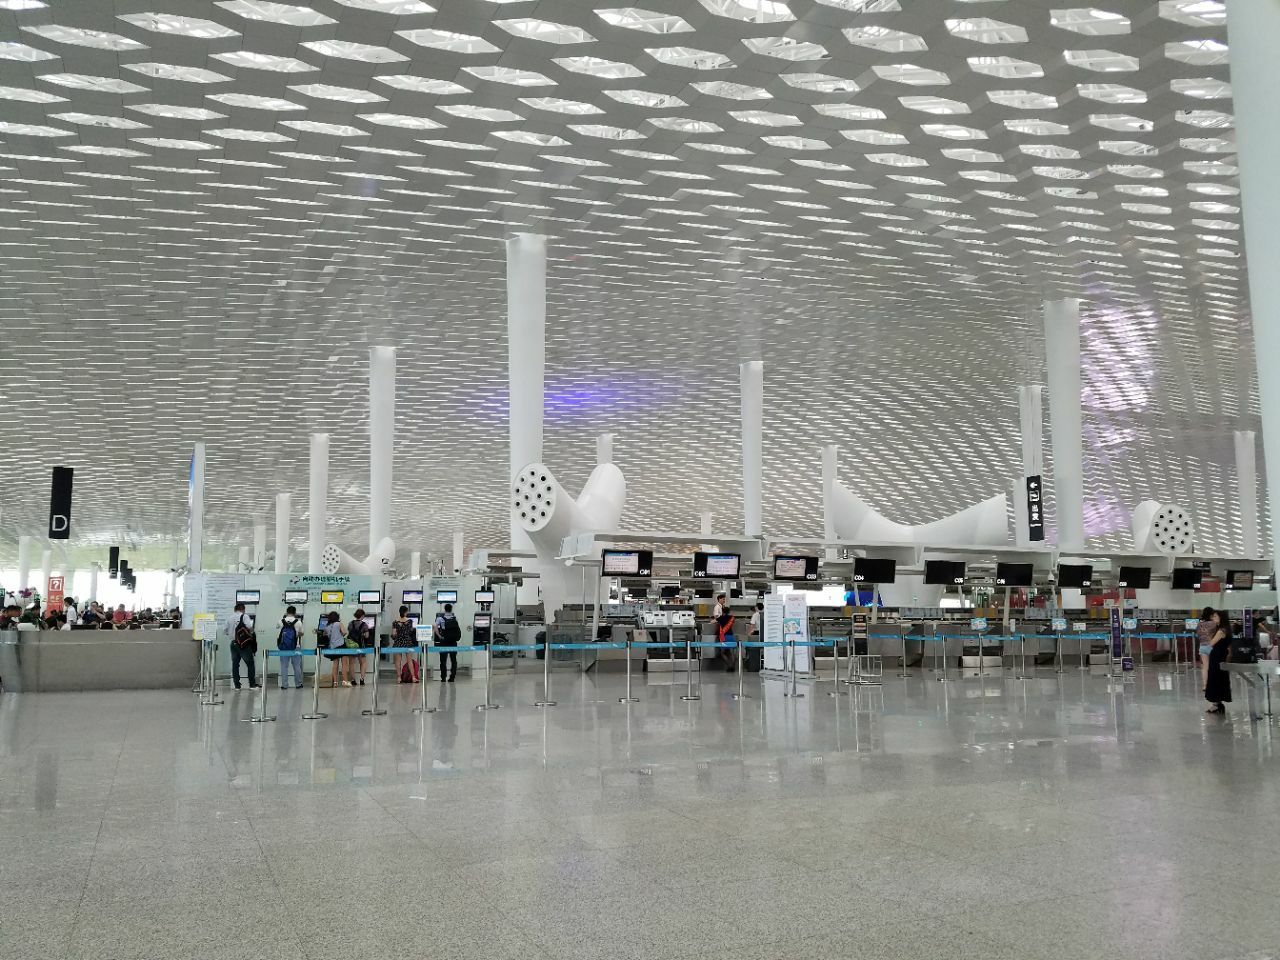 航空建筑新标杆：深圳宝安国际机场卫星厅 / GDAD、Aedas、兰德隆与布朗 | 建筑学院